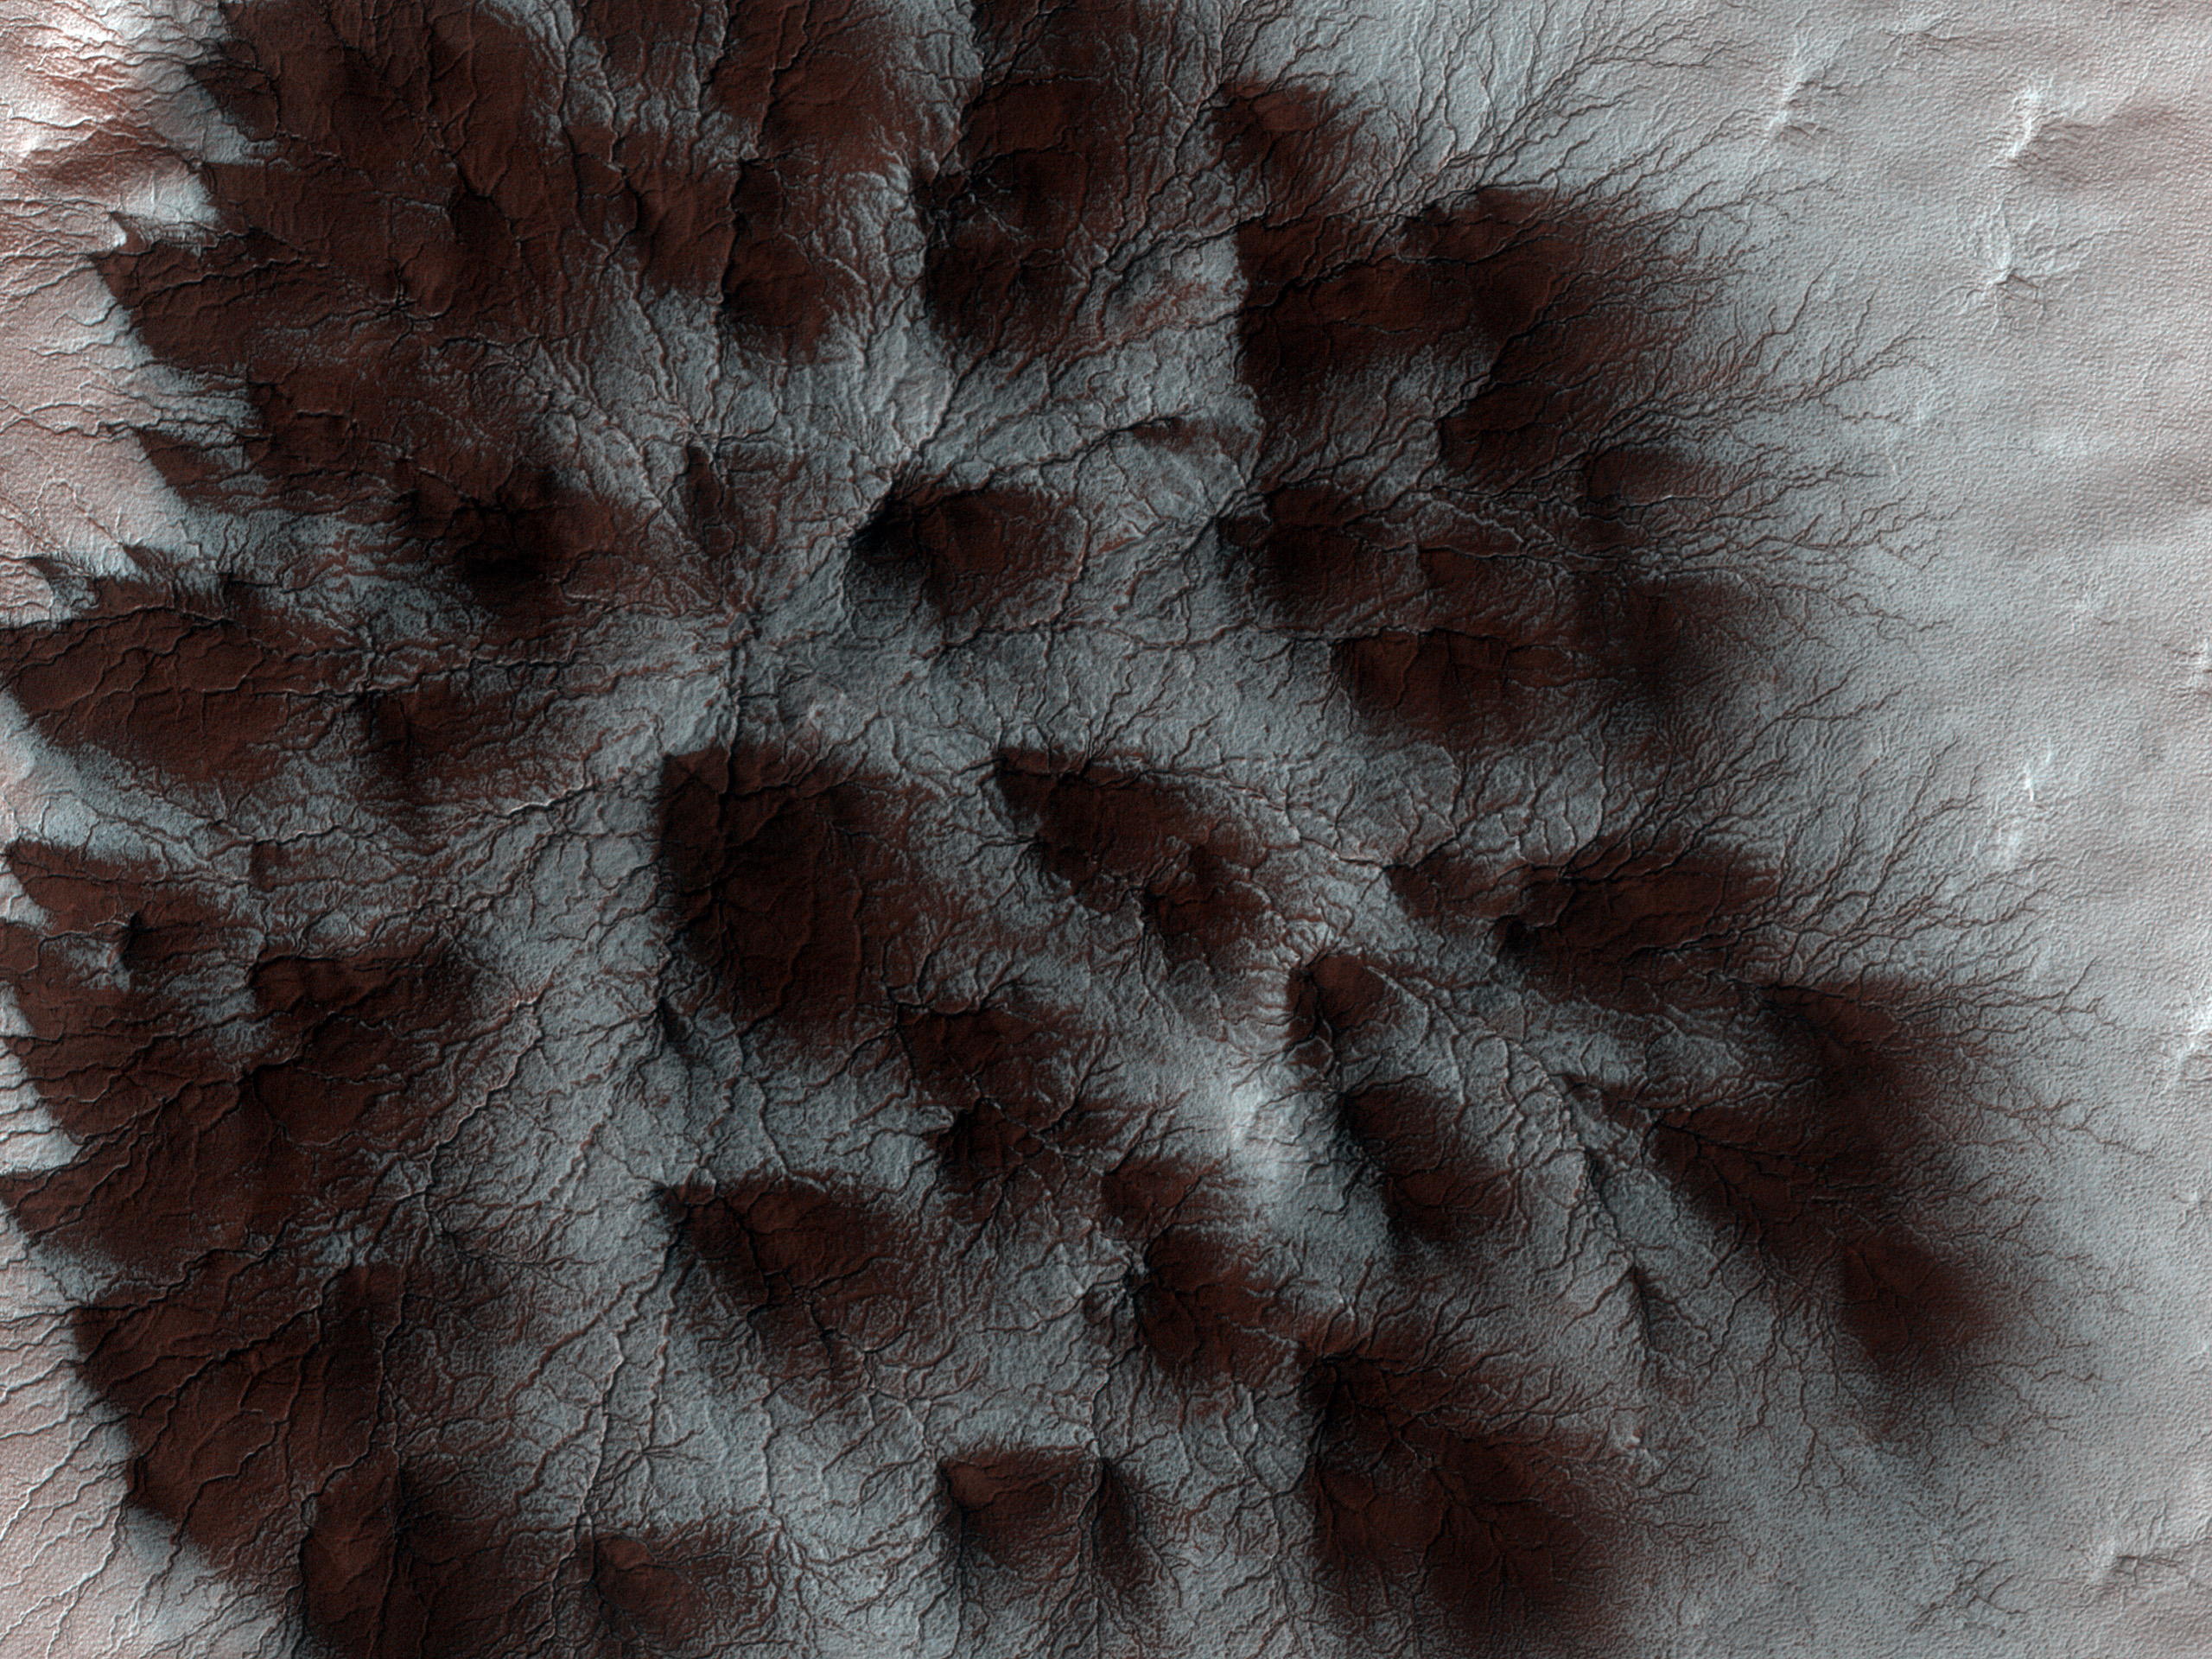 Forme complesse sulla superficie di Marte